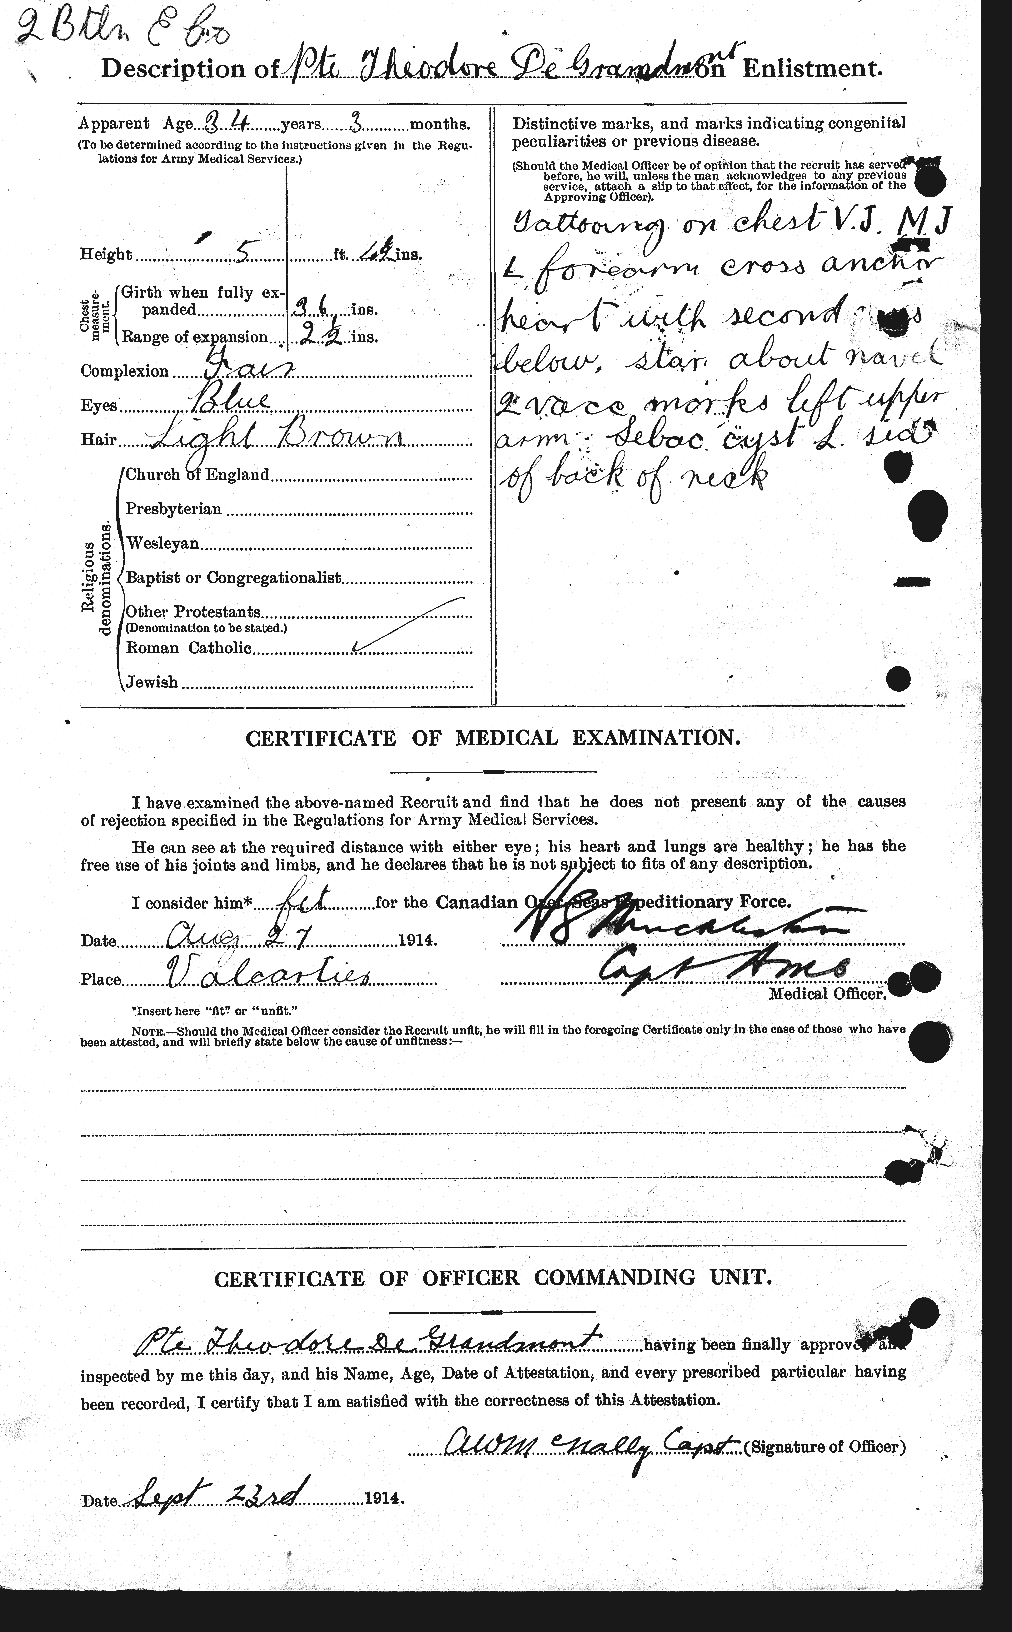 Dossiers du Personnel de la Première Guerre mondiale - CEC 286009b